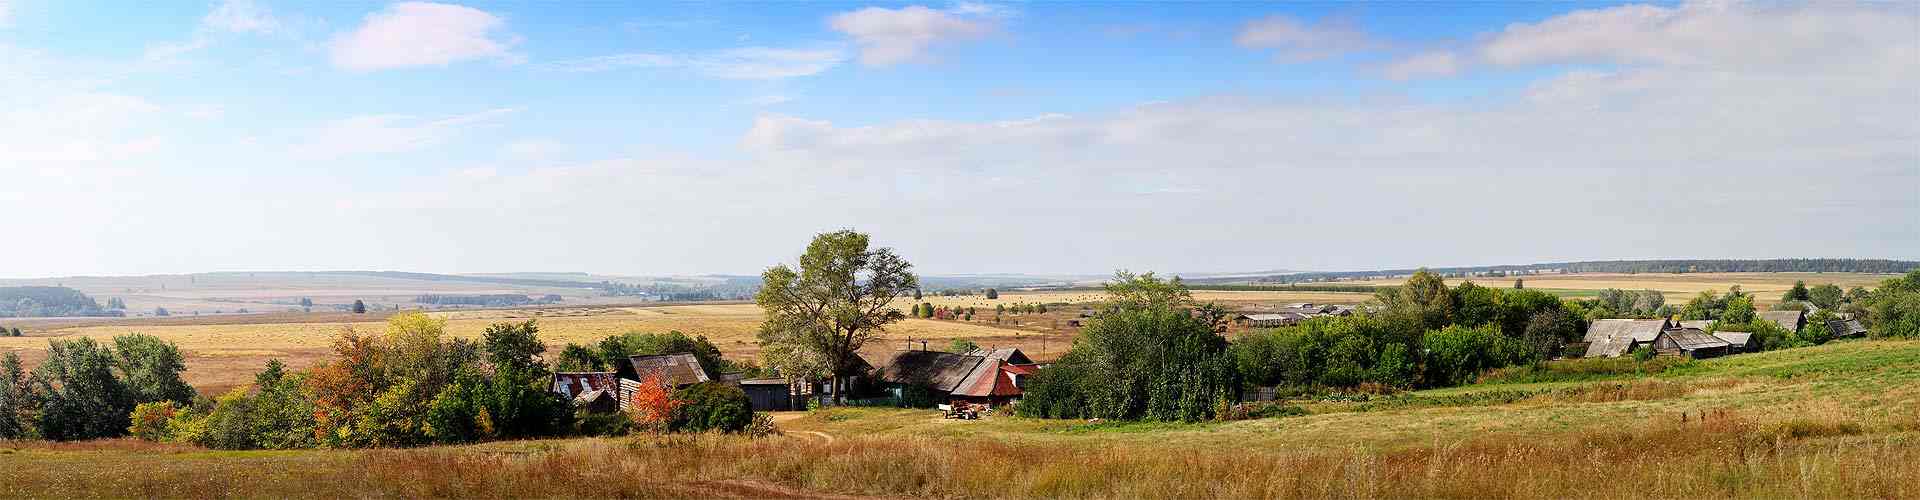 Casas rurales en Vidrieros